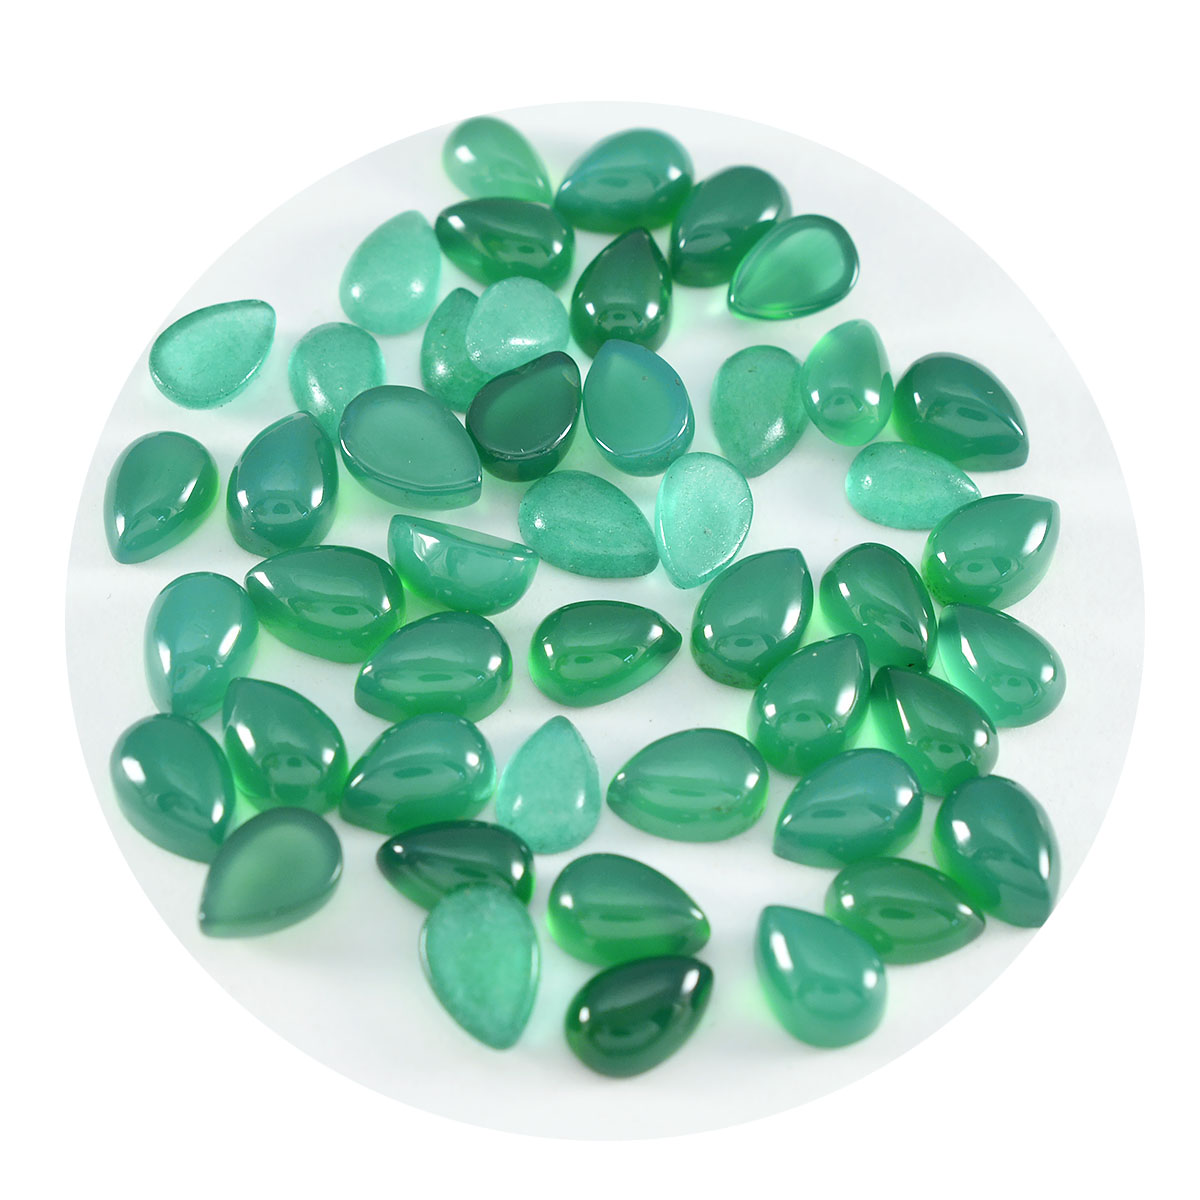 Riyogems 1PC Green Onyx Cabochon 5x7 mm Pear Shape pretty Quality Gems